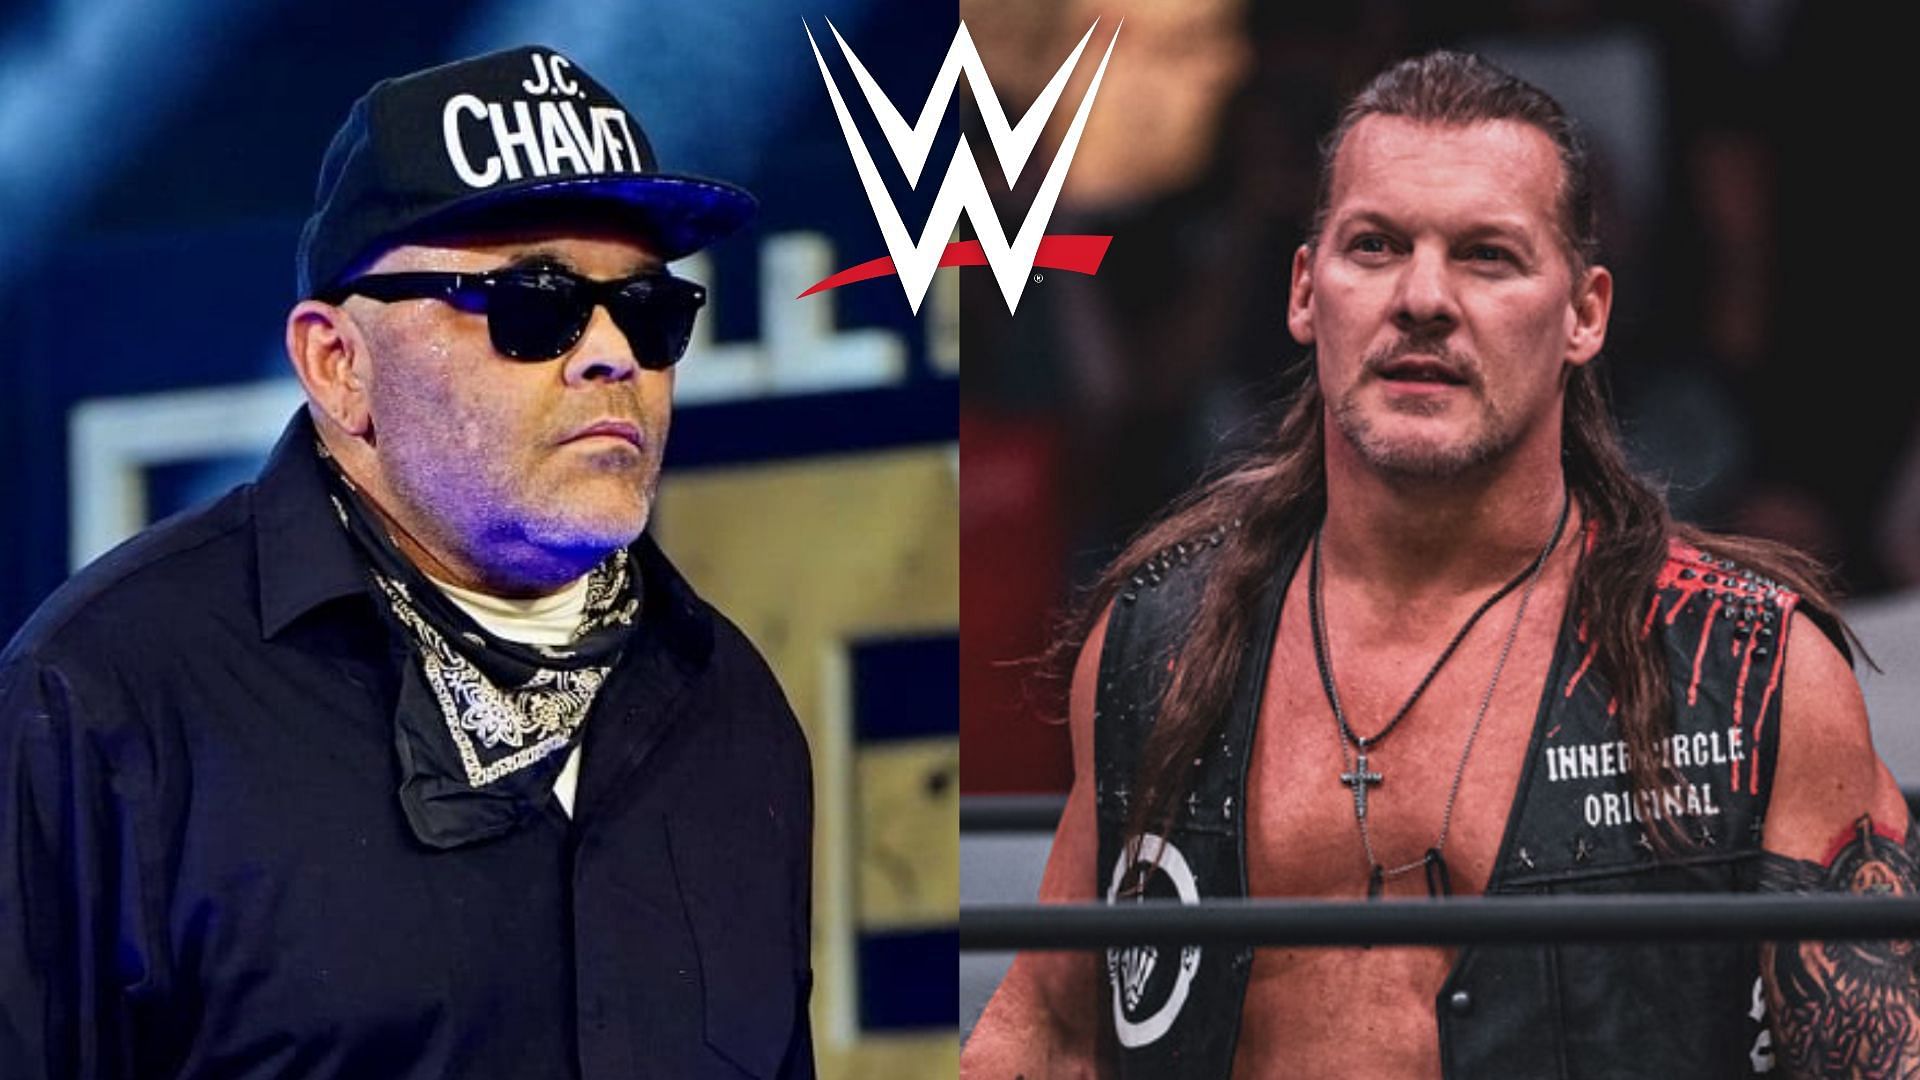 Konnan has defended slander against Chris Jericho